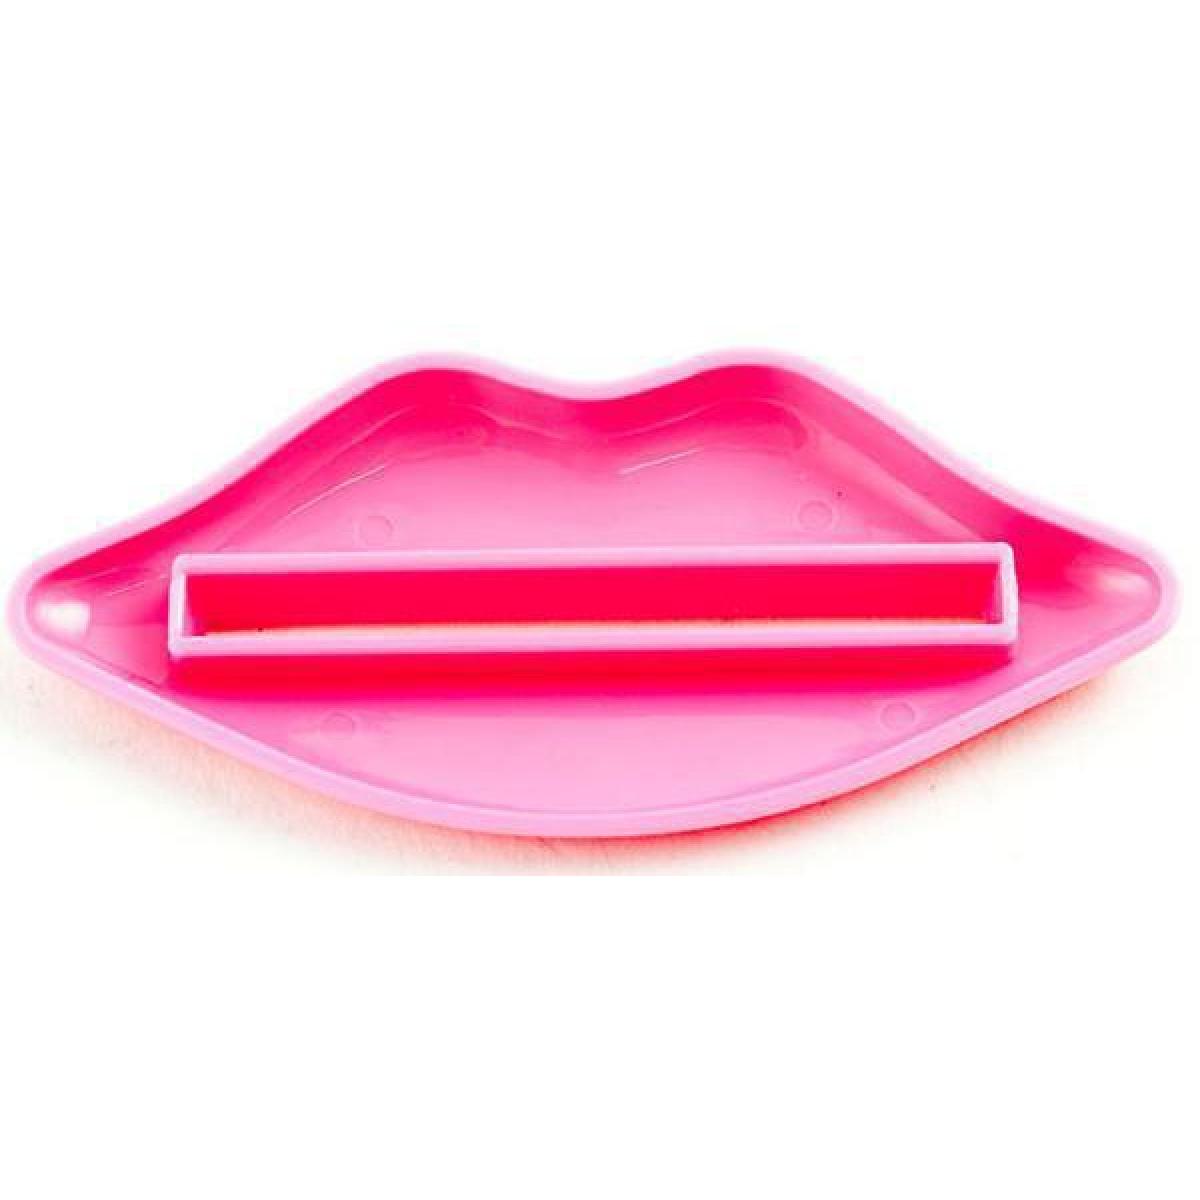 Πρέσα Στίφτης οδοντόκρεμας - Kiss 2 τεμάχια Κόκκινο & Ροζ